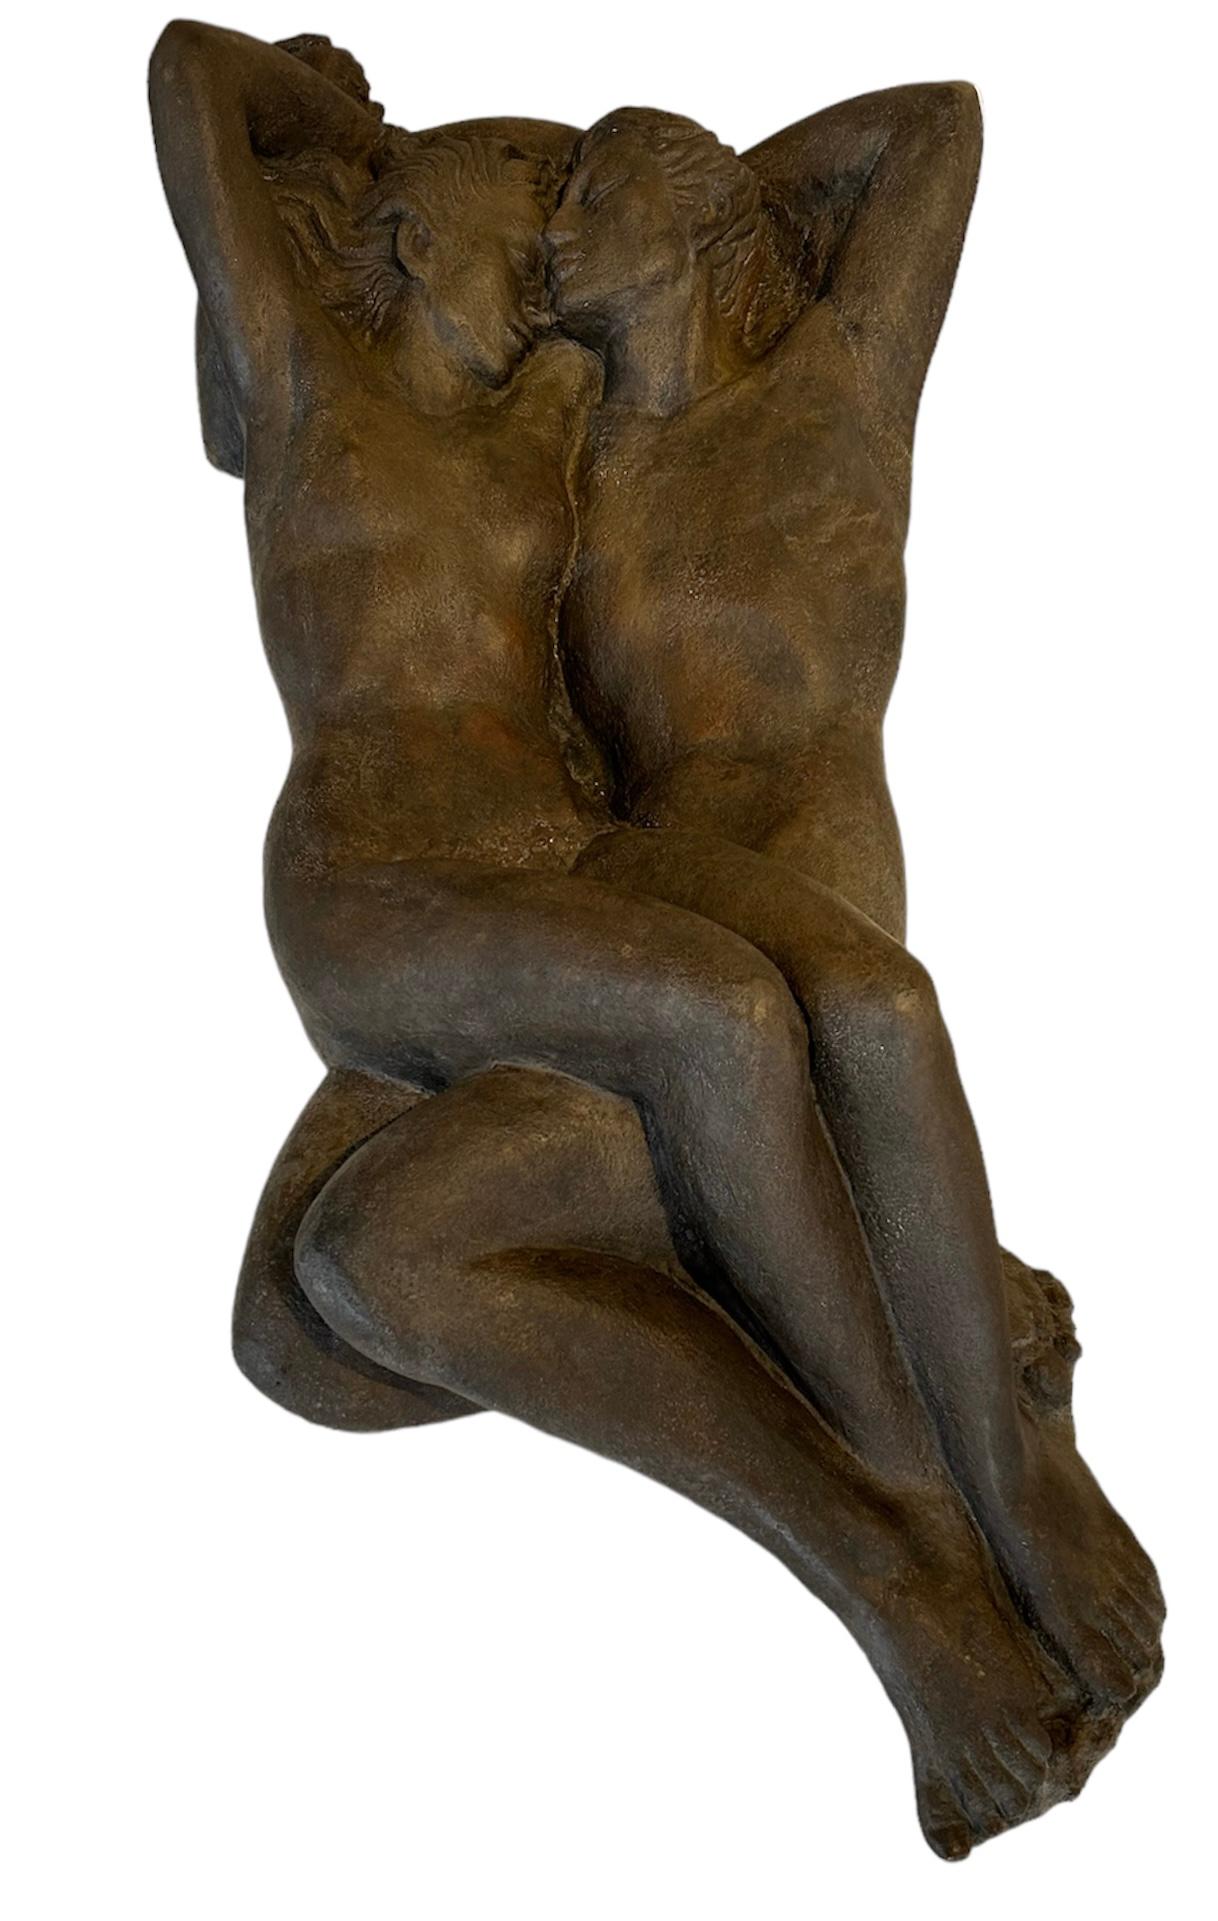 Enrique Alférez Nude Sculpture - Adam and Eve